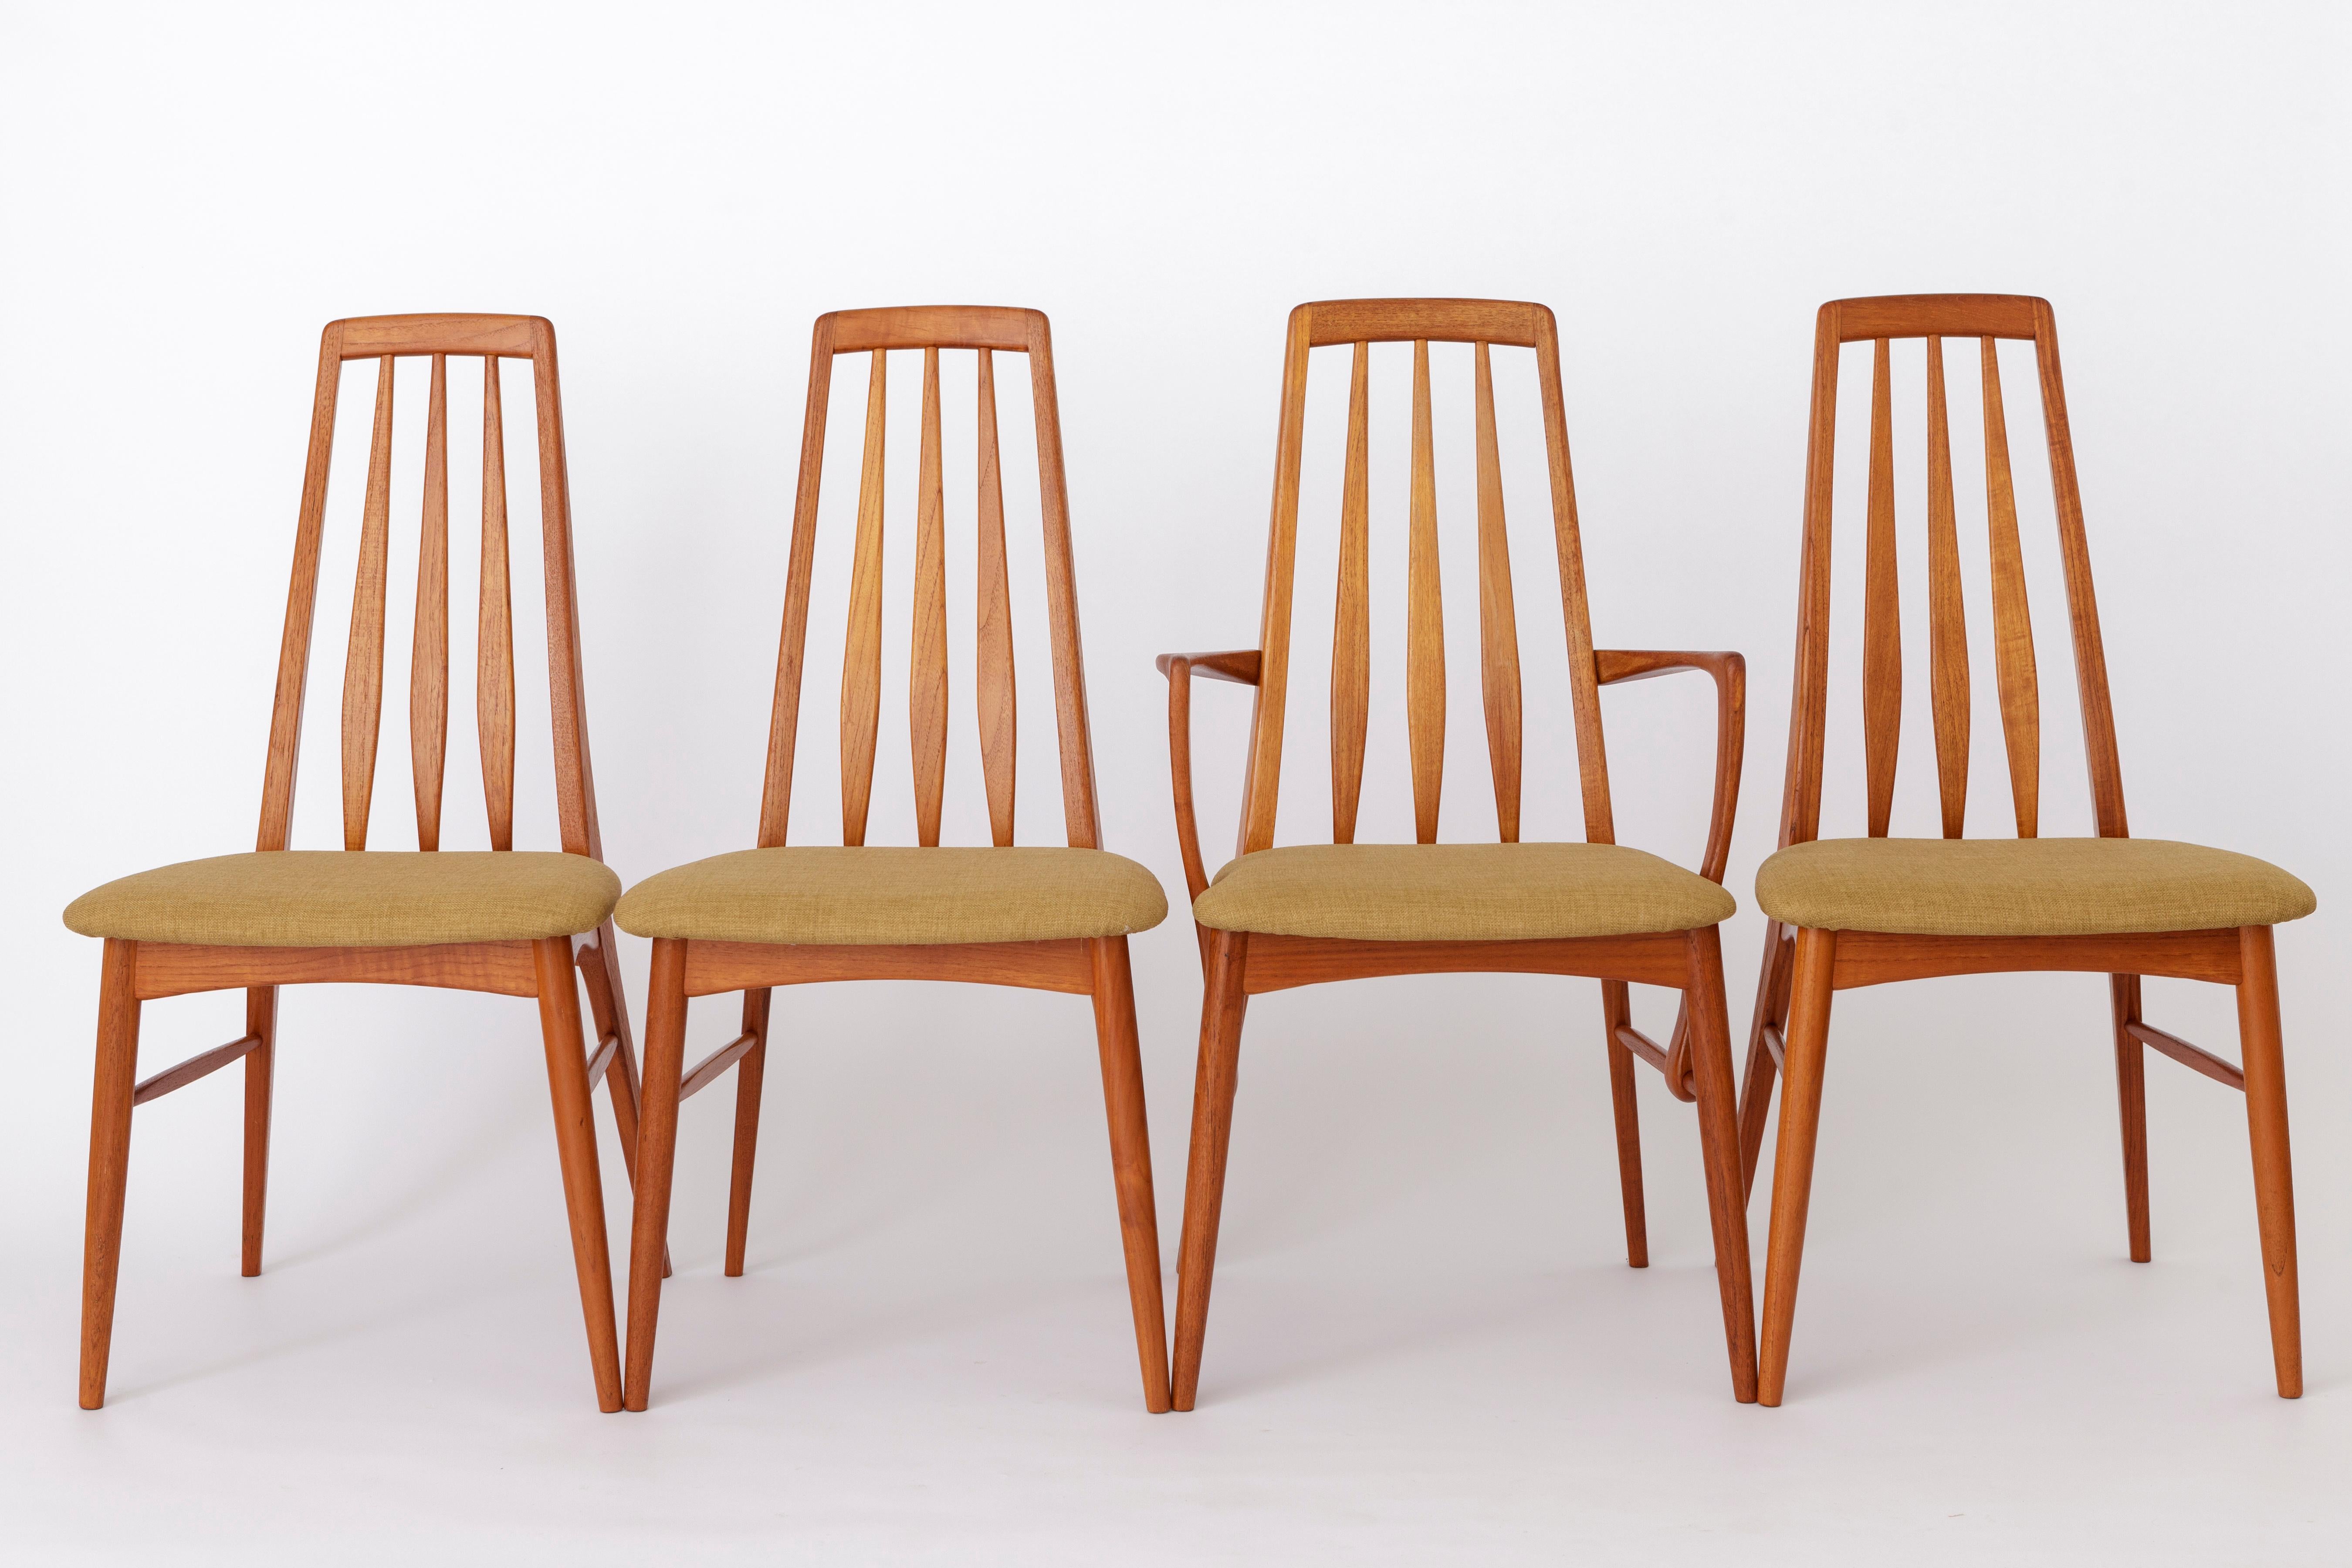 Satz von 6 Stühlen aus Teakholz von dem dänischen Designer und Hersteller Niels Koefoed. 
Produktionszeitraum: 1960s. 
Der angezeigte Preis gilt für ein 6er-Set (2 Sessel + 4 Beistellstühle). 

Stabiler Stuhlrahmen aus Teakholz. Aufgearbeitet und